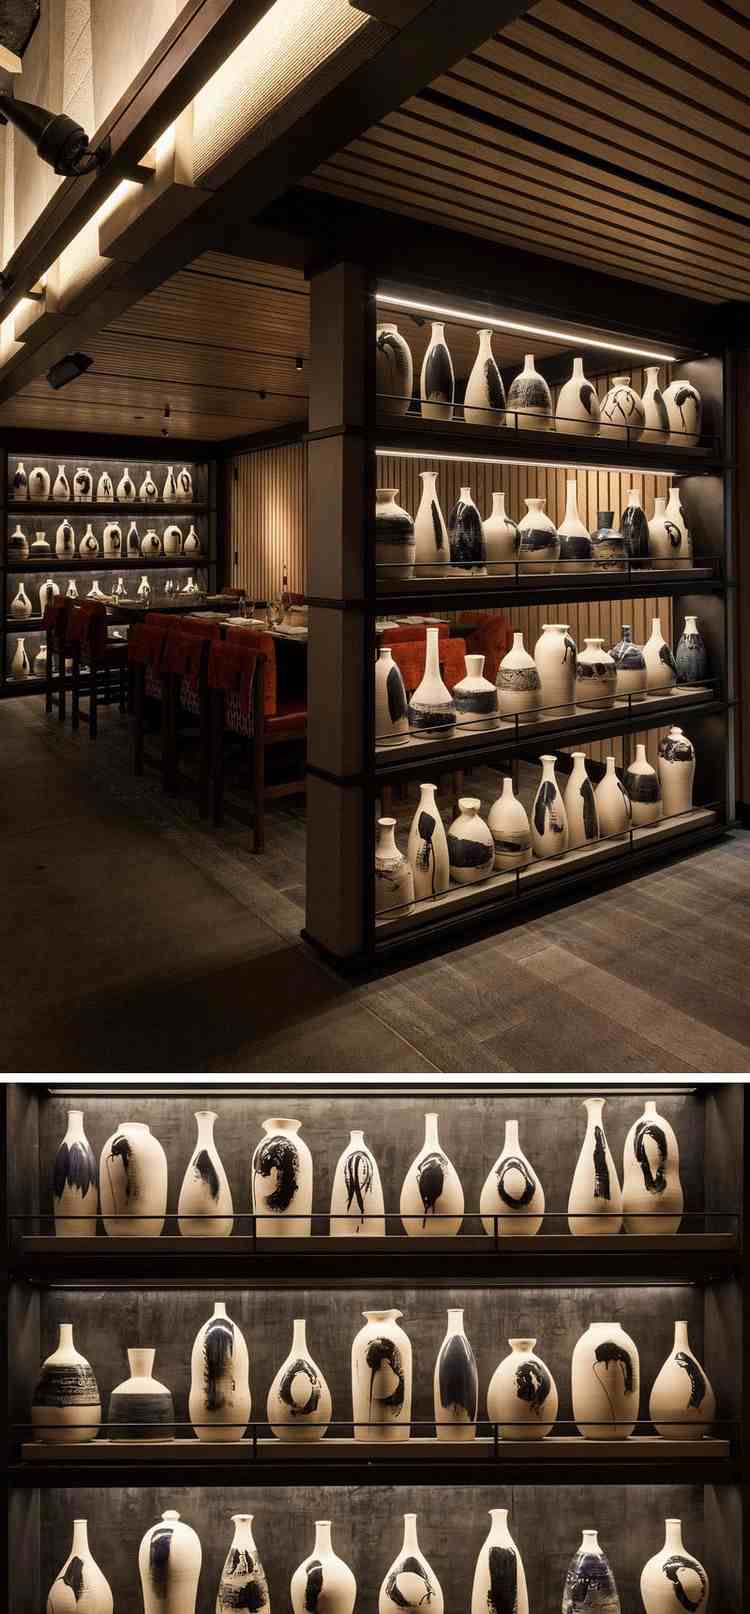 Kunstinstallation aus Keramik restaurant-regale-toepferwaren-sake-flaschen